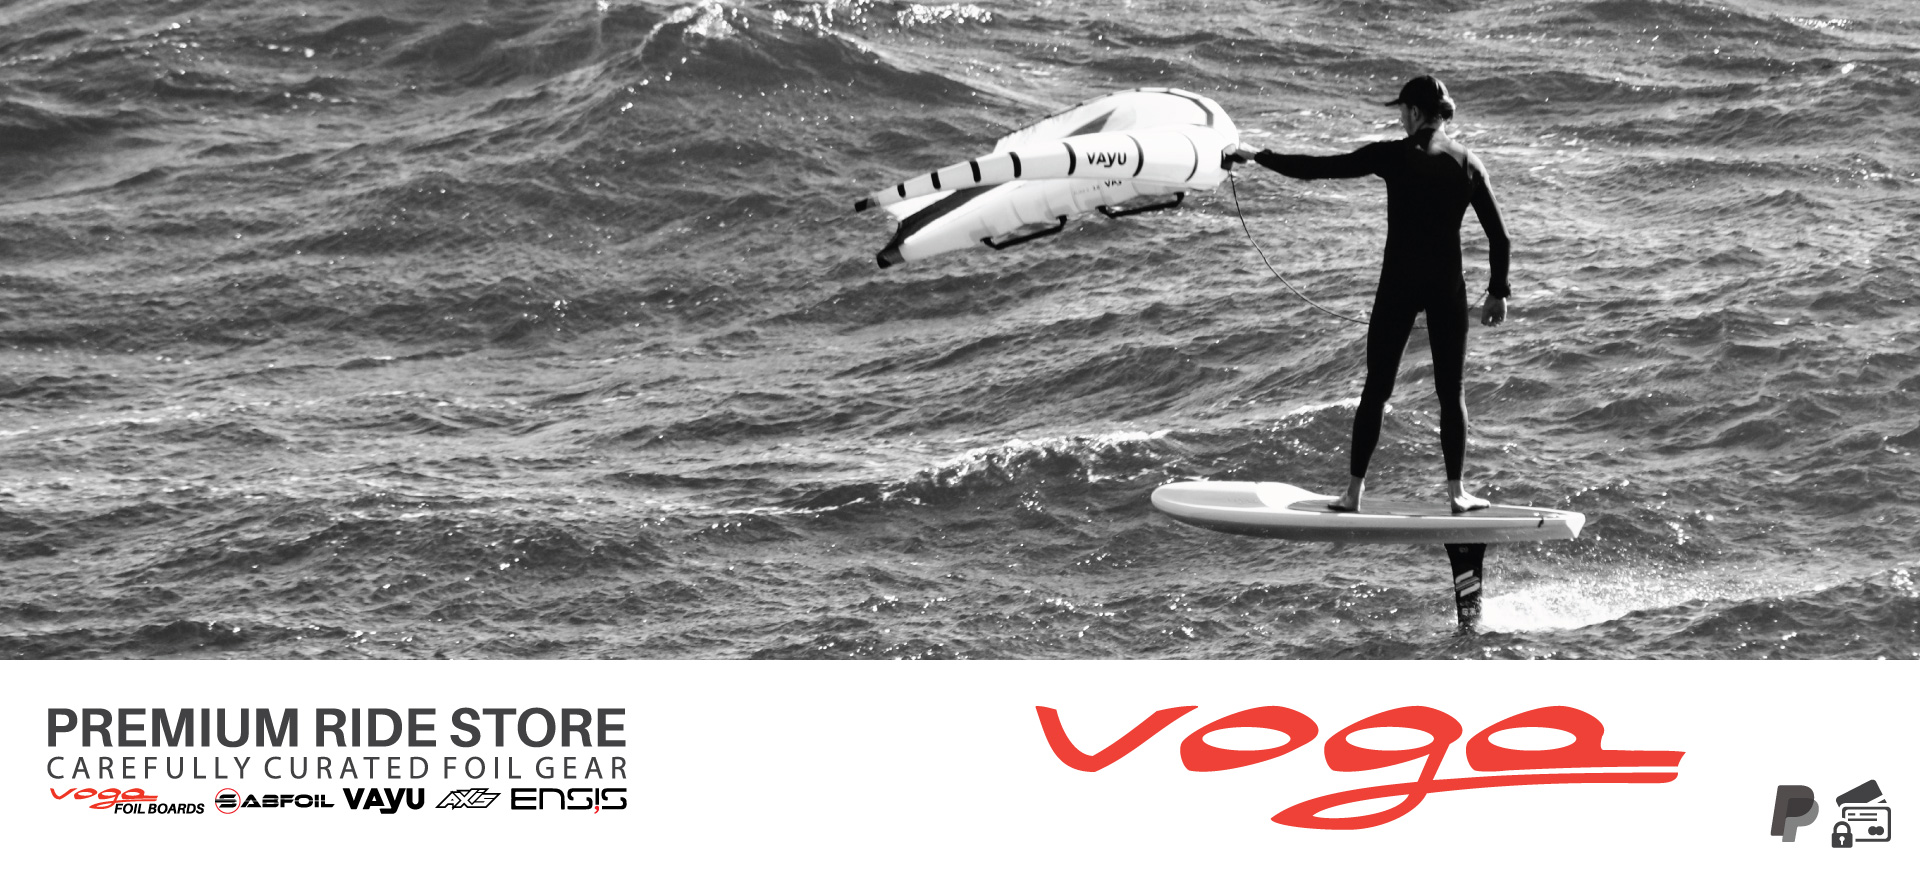 Voga Premium Ride Store downwind foil boards voga marine